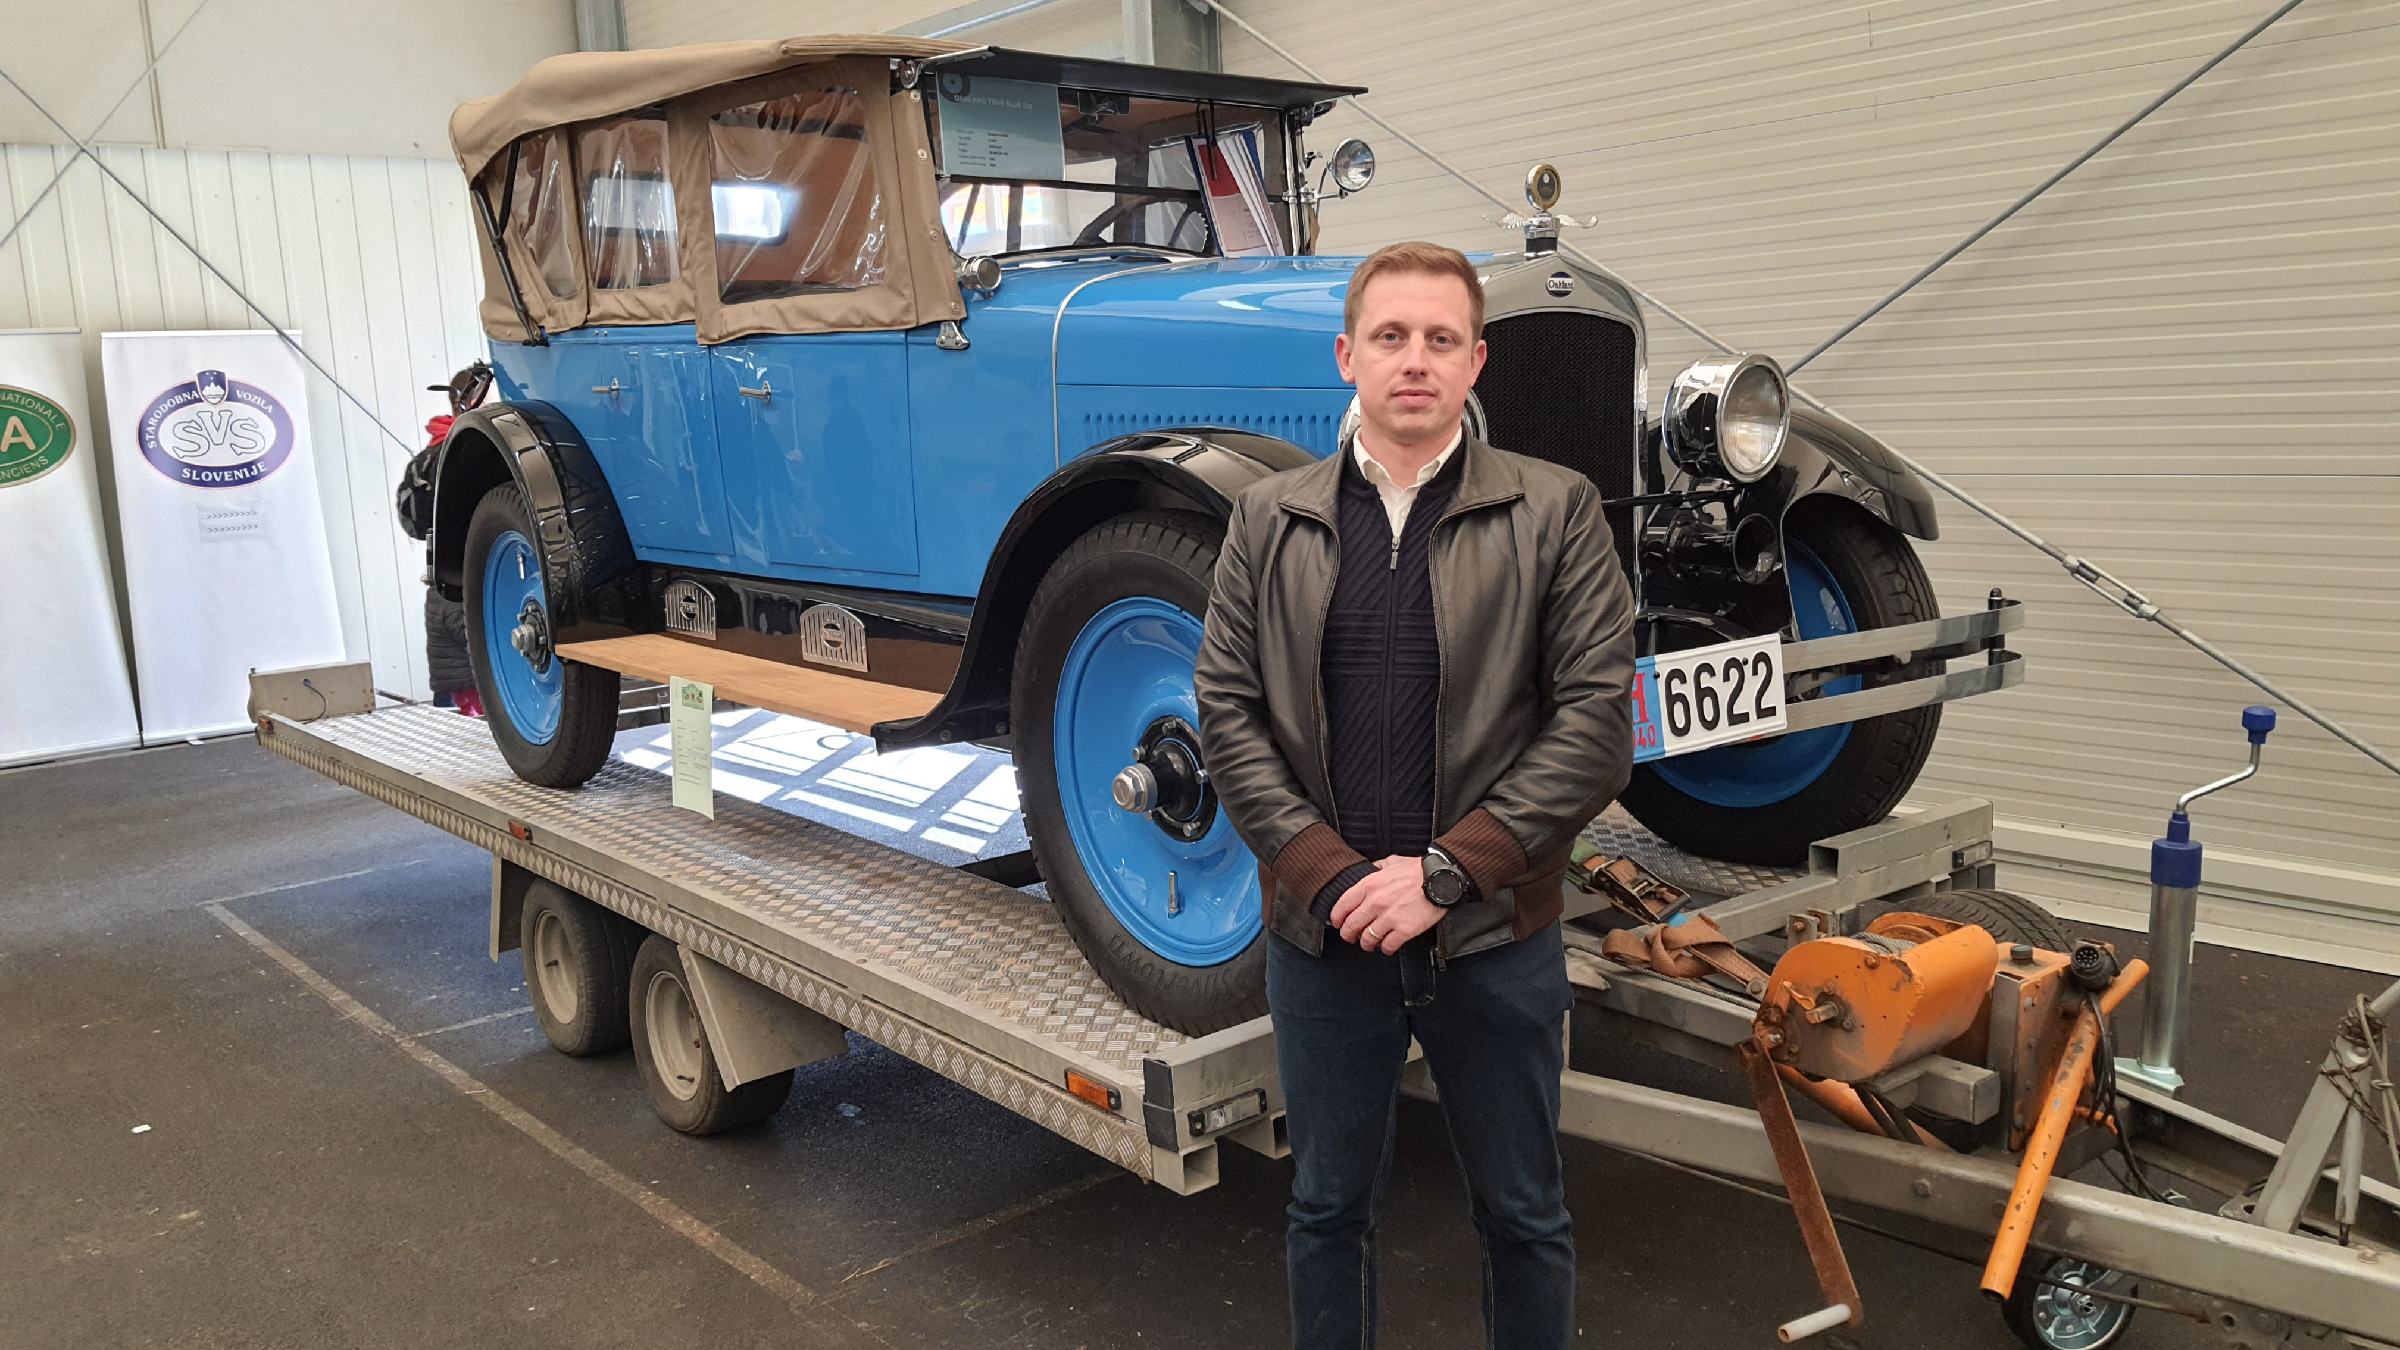 DNEVNA: Najstarejši avtomobil na Hrvaškem iz leta 1925, kako pa je s slovenskimi starodobniki?